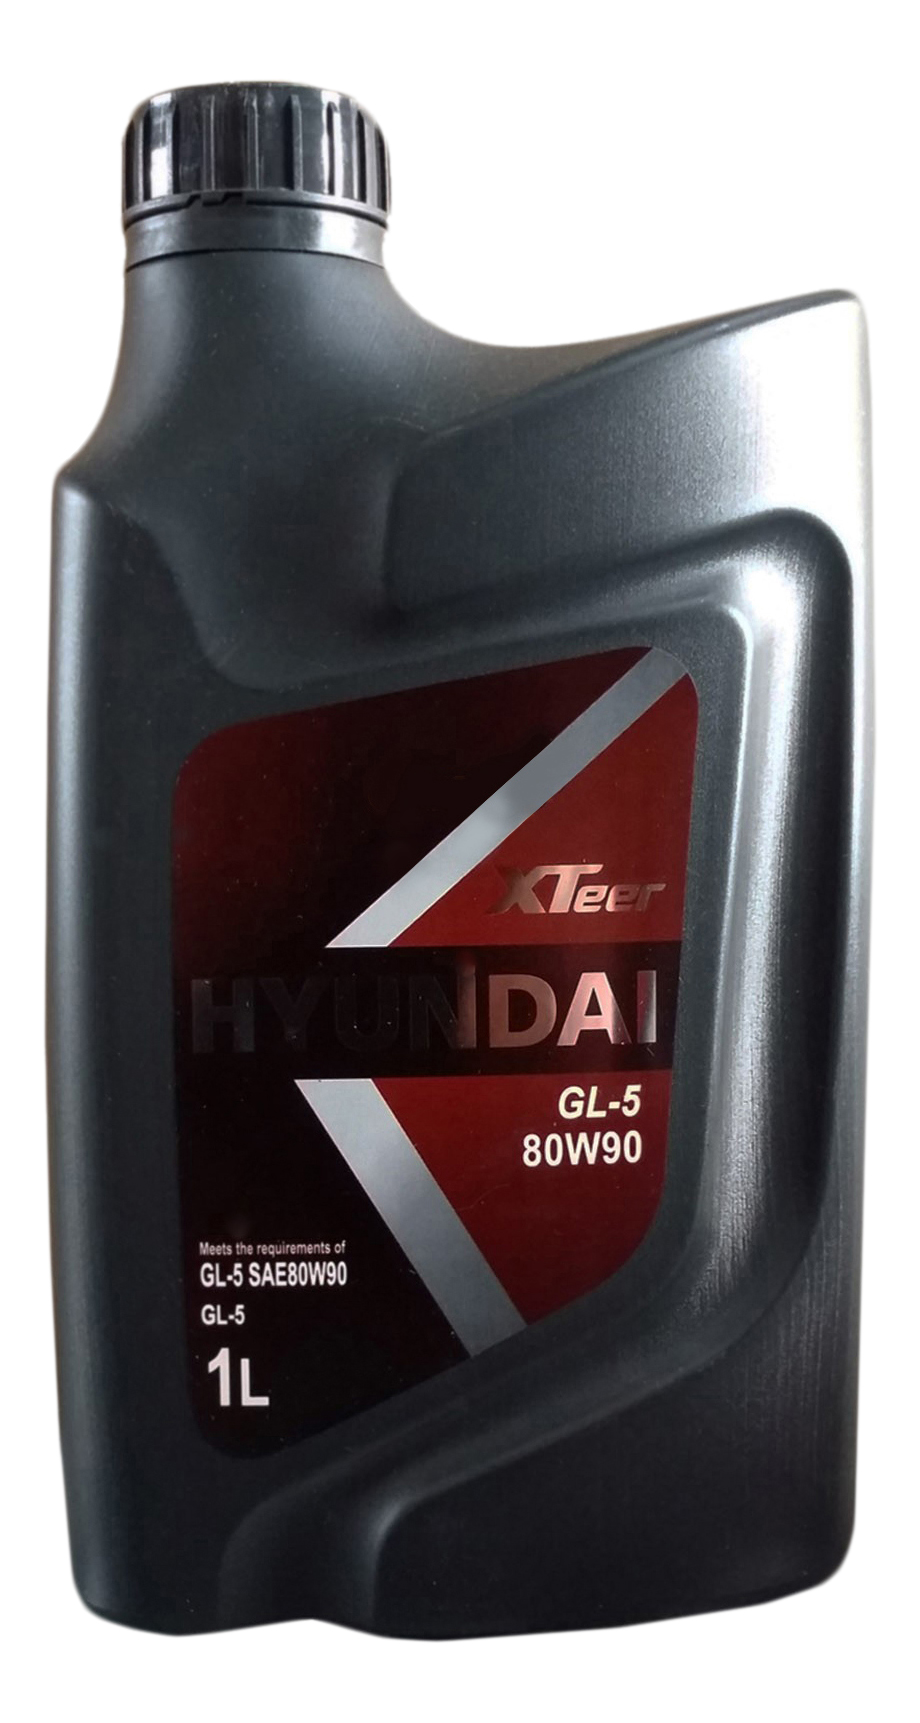 Трансмиссионное масло KIA Gear Oil-5 80w90, 1л полусинтетическое 1011017